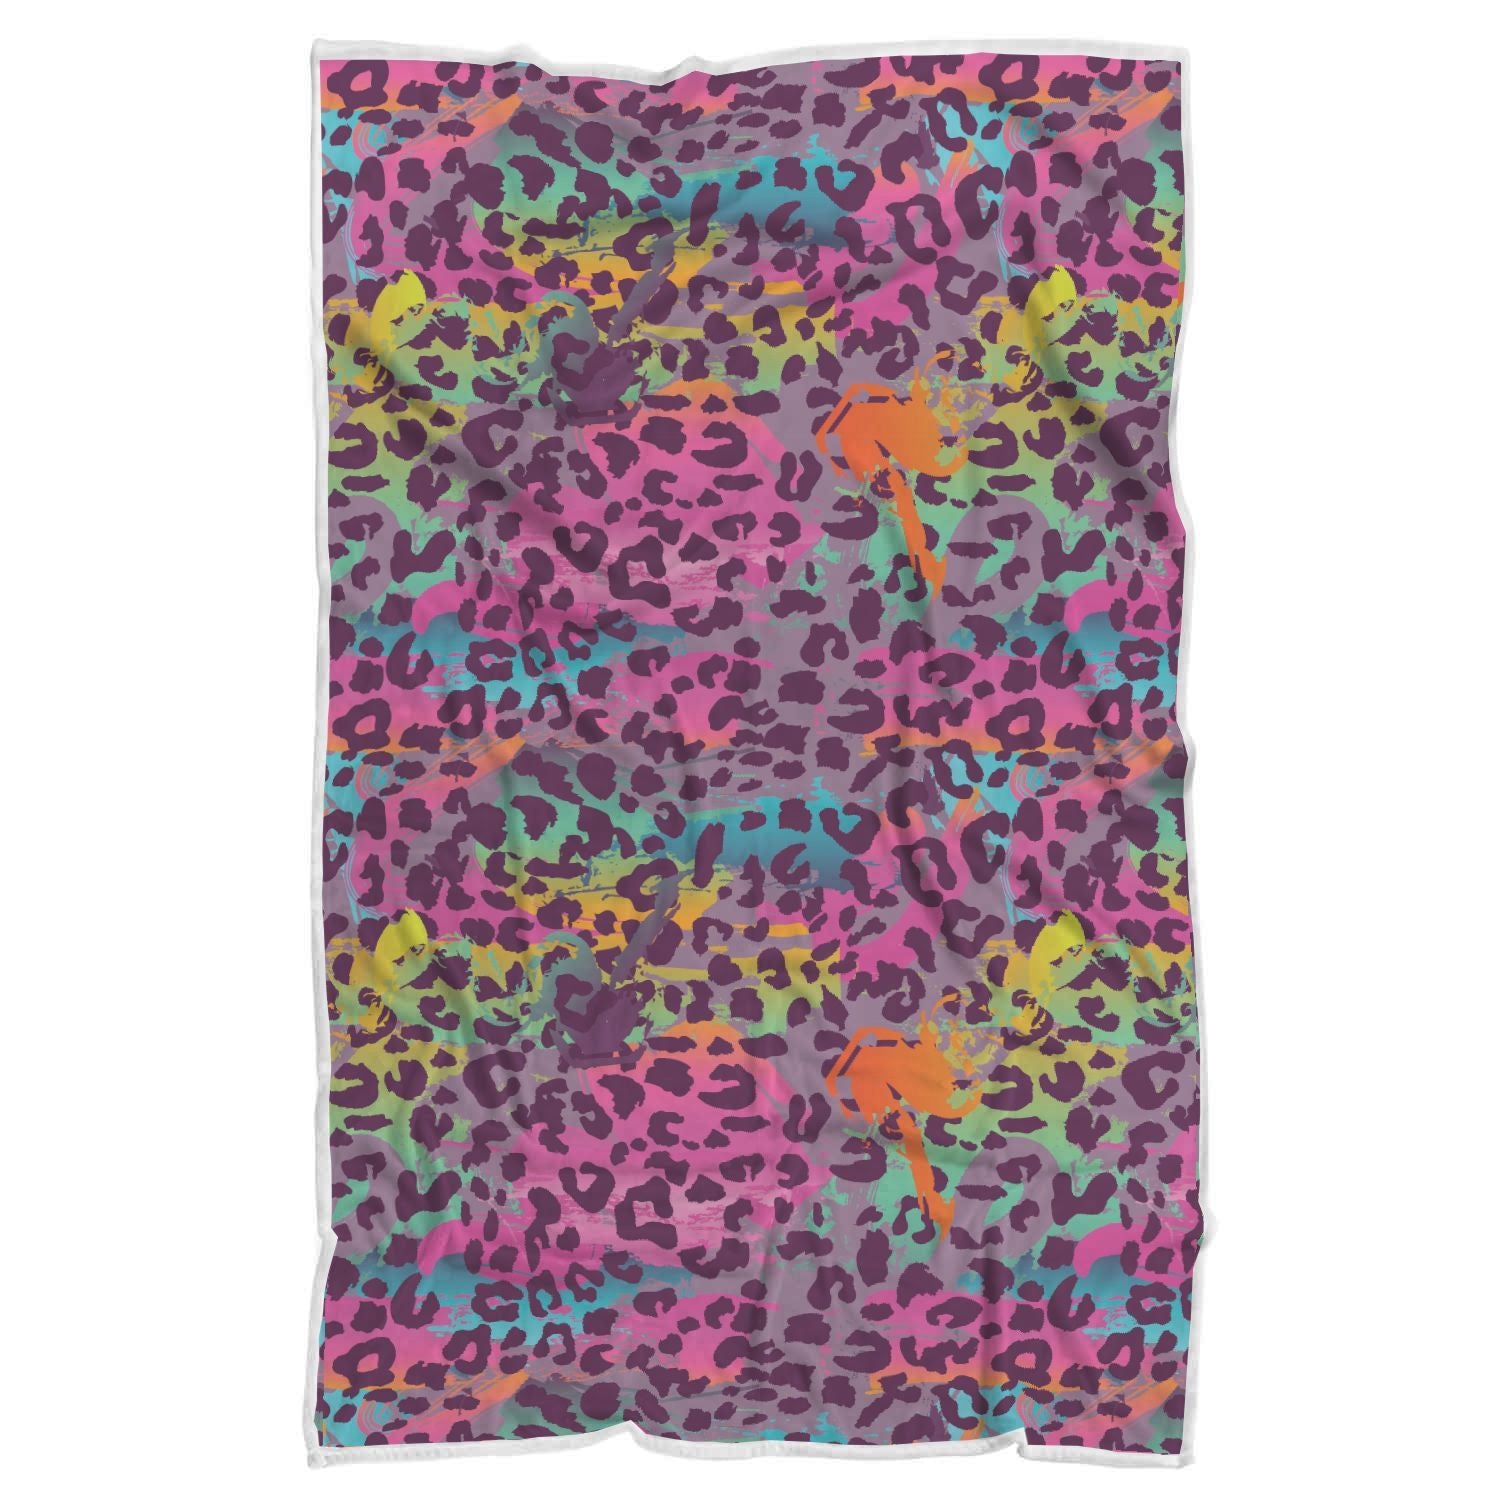 https://grizzshopping.com/cdn/shop/products/Rainbow-Cheetah-Leopard-Pattern-Print-Throw-Blanket_1141e361-497e-4110-ae99-f8492f76bd7b.jpg?v=1631311005